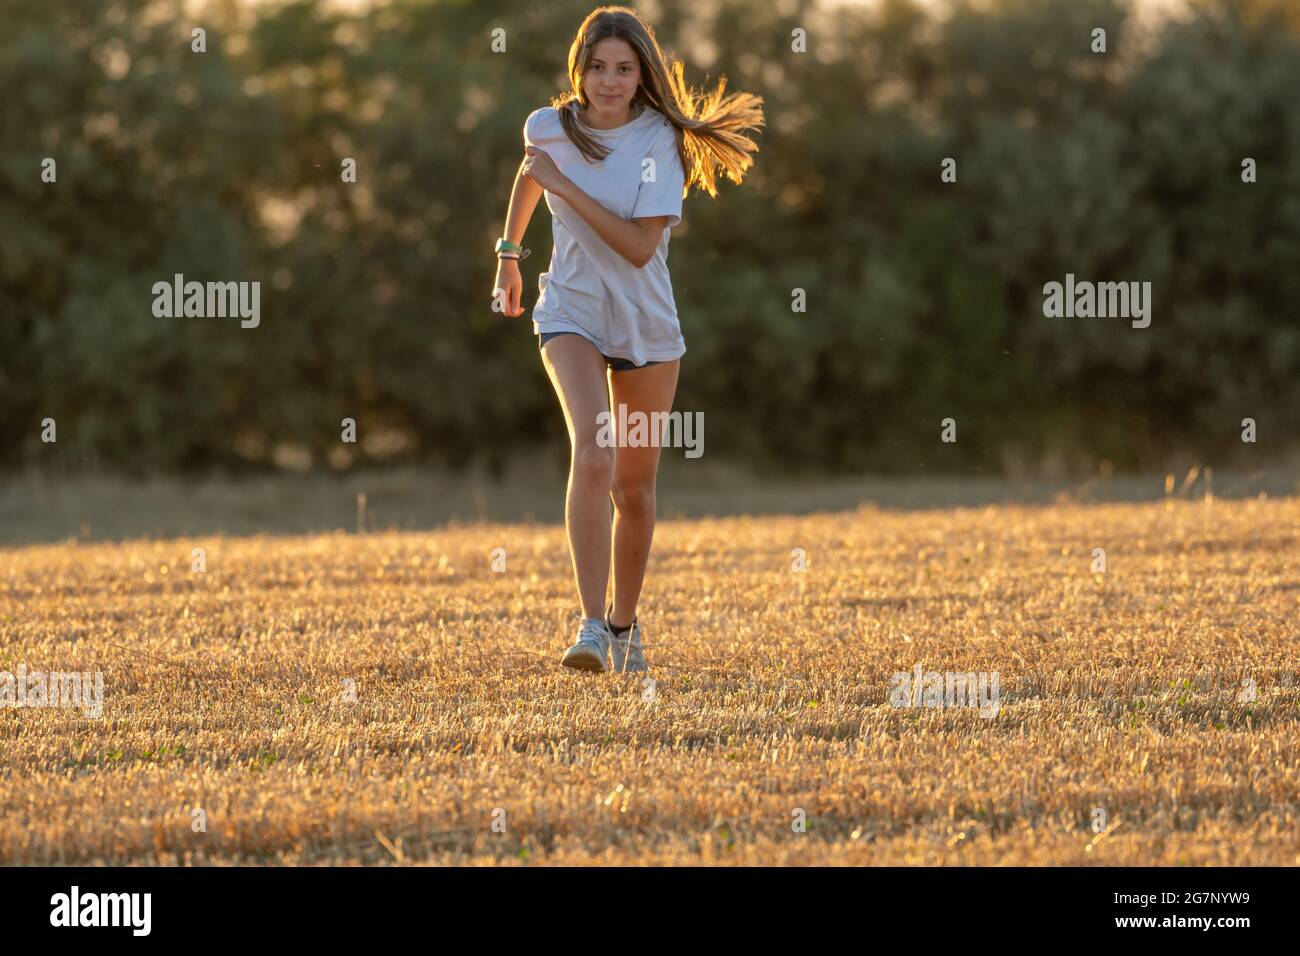 ragazza adolescente con lunghi capelli biondi, pantaloncini corti e t-shirt bianca che corre di fronte alla fotocamera attraverso un campo raccolto. Giocare sport sul campo. Foto Stock